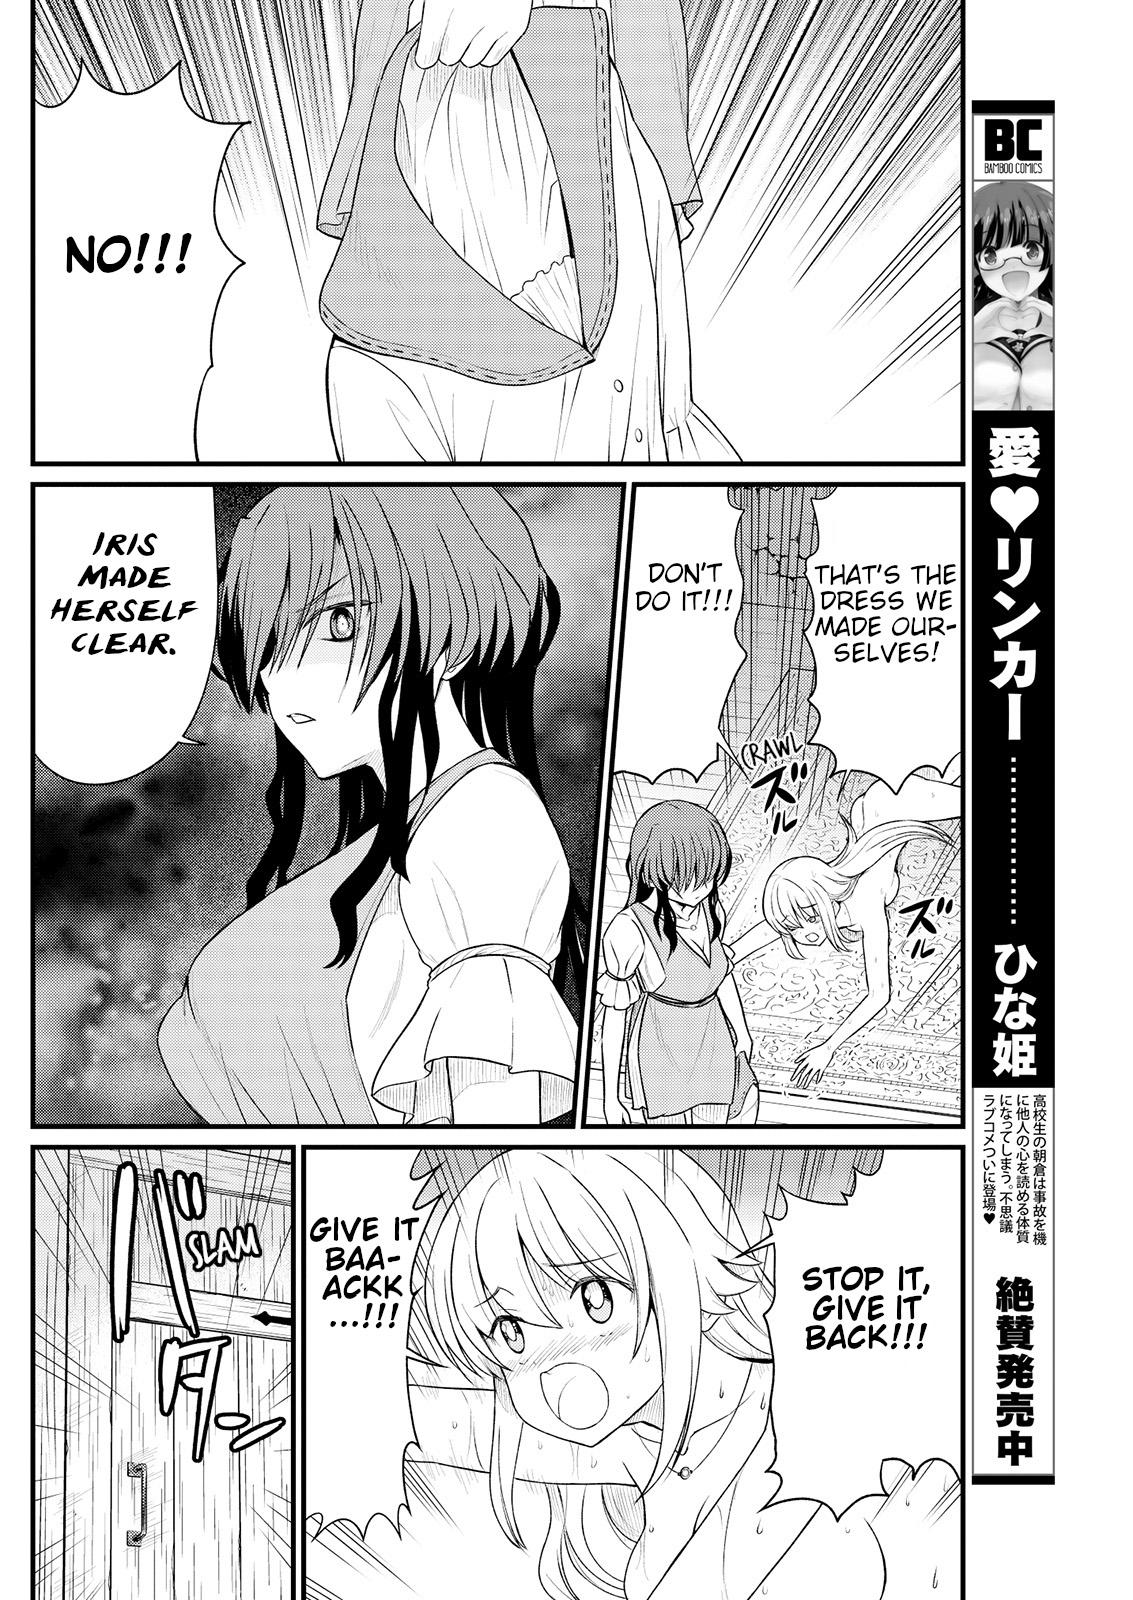 Girl Kukkorose no Himekishi to nari, Yuri Shoukan de Hataraku koto ni Narimashita. 9 | Becoming Princess Knight and Working at Yuri Brothel 9 Shorts - Page 8